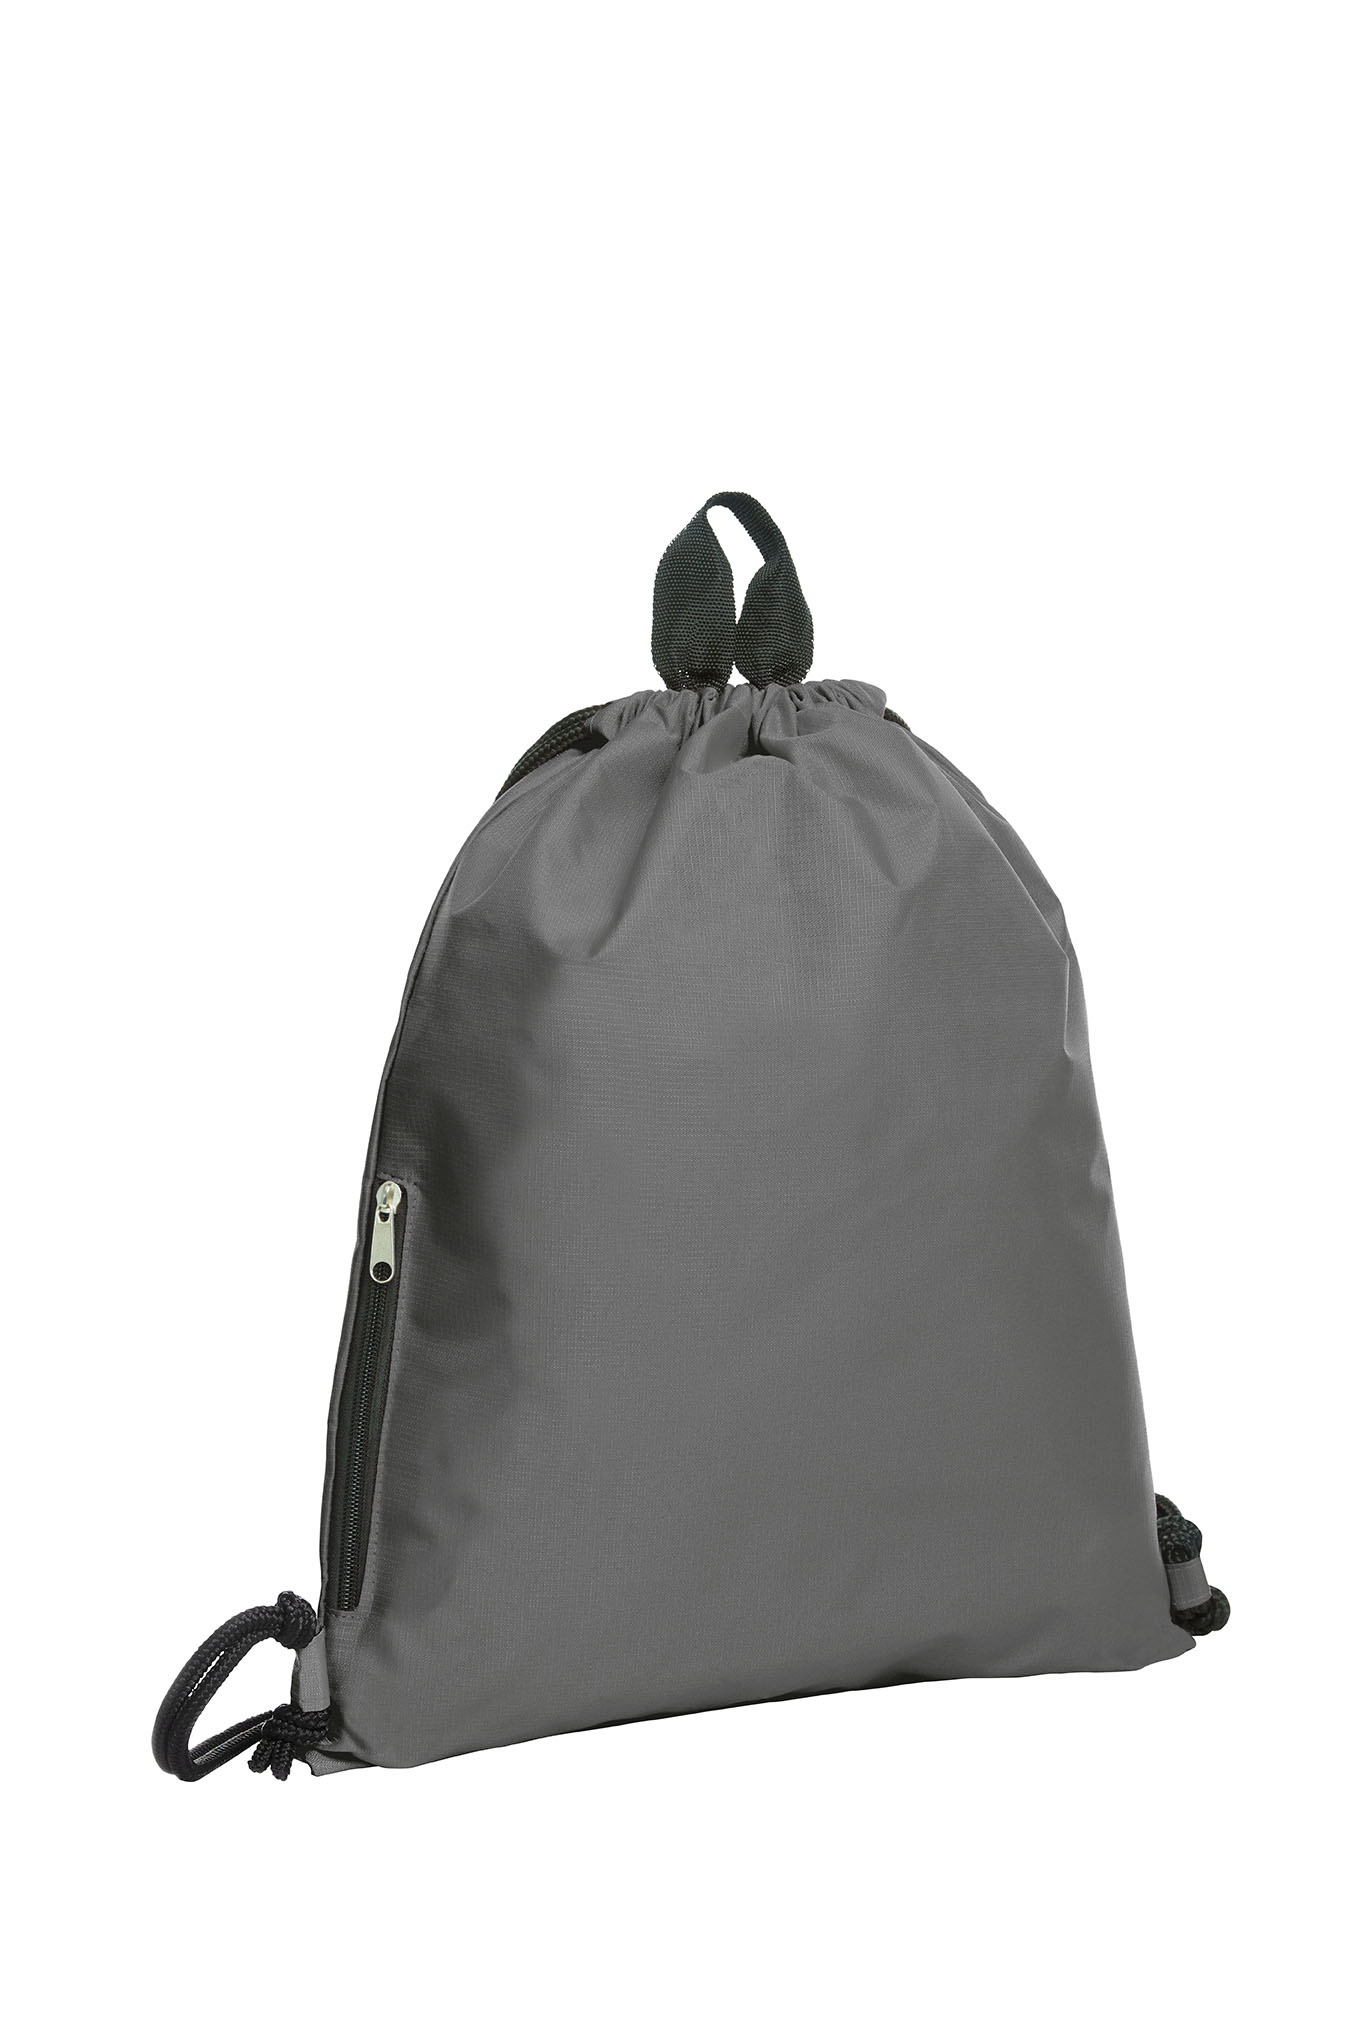 Frontline HKBAG Polyester Adjustable Drawstring Bag - Frontline